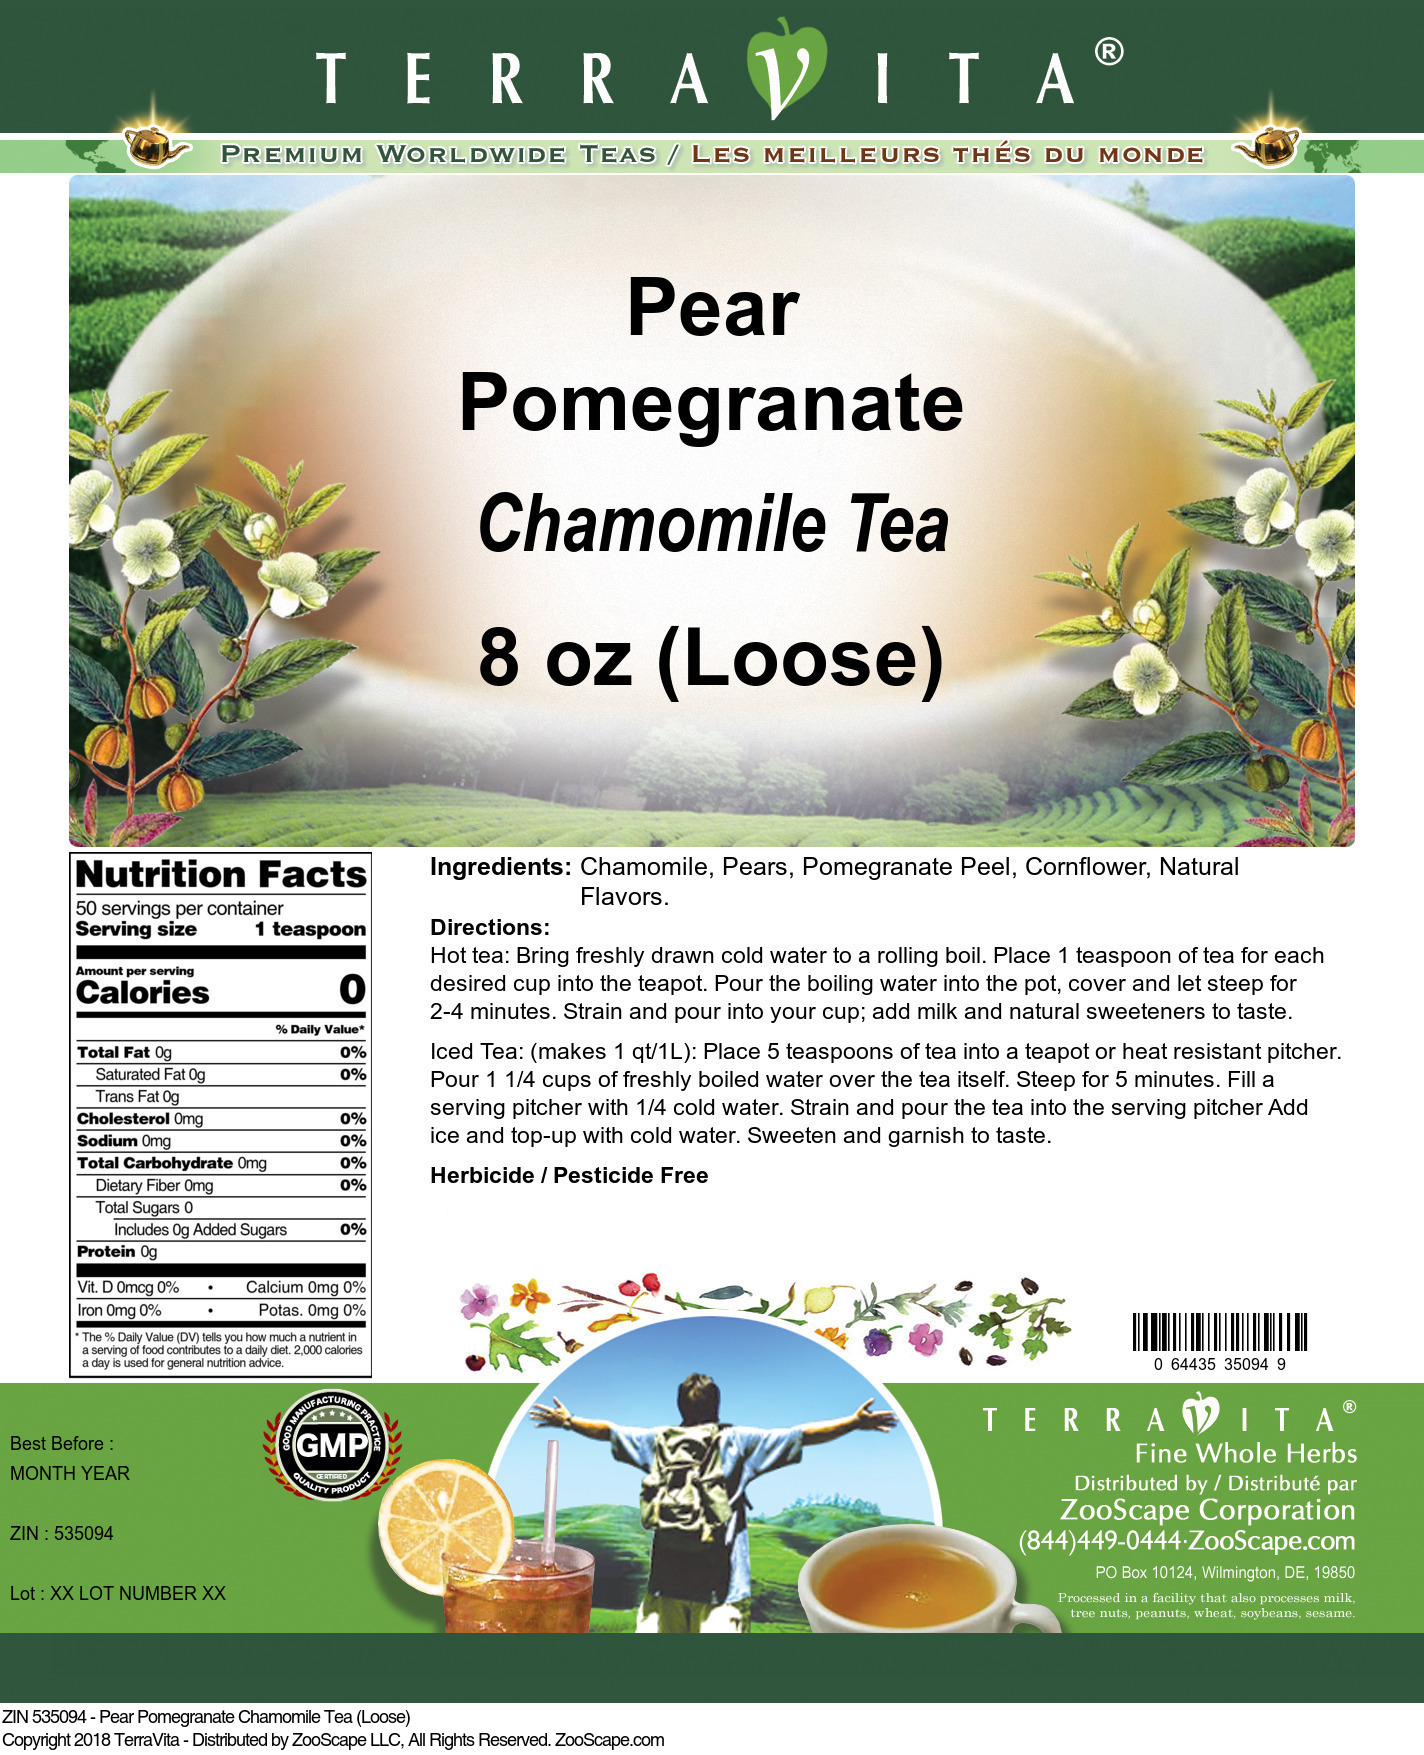 Pear Pomegranate Chamomile Tea (Loose) - Label